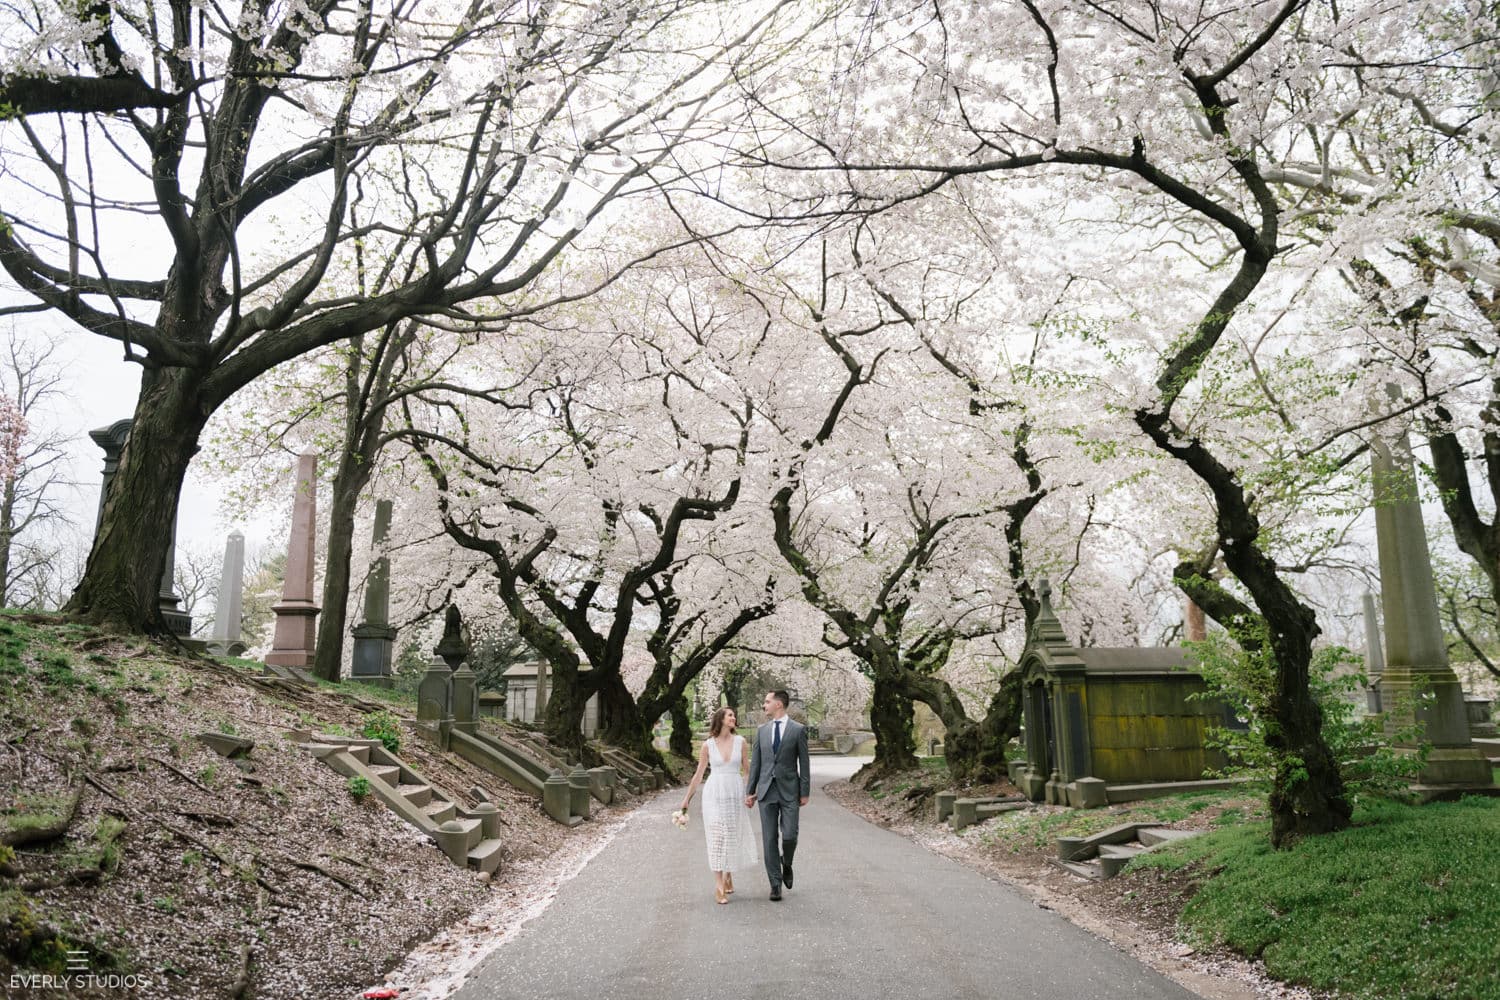 Greewood Cemetery wedding portraits in Brooklyn, New York, during cherry blossom season. Photos by Brooklyn wedding photographer Everly Studios, www.everlystudios.com